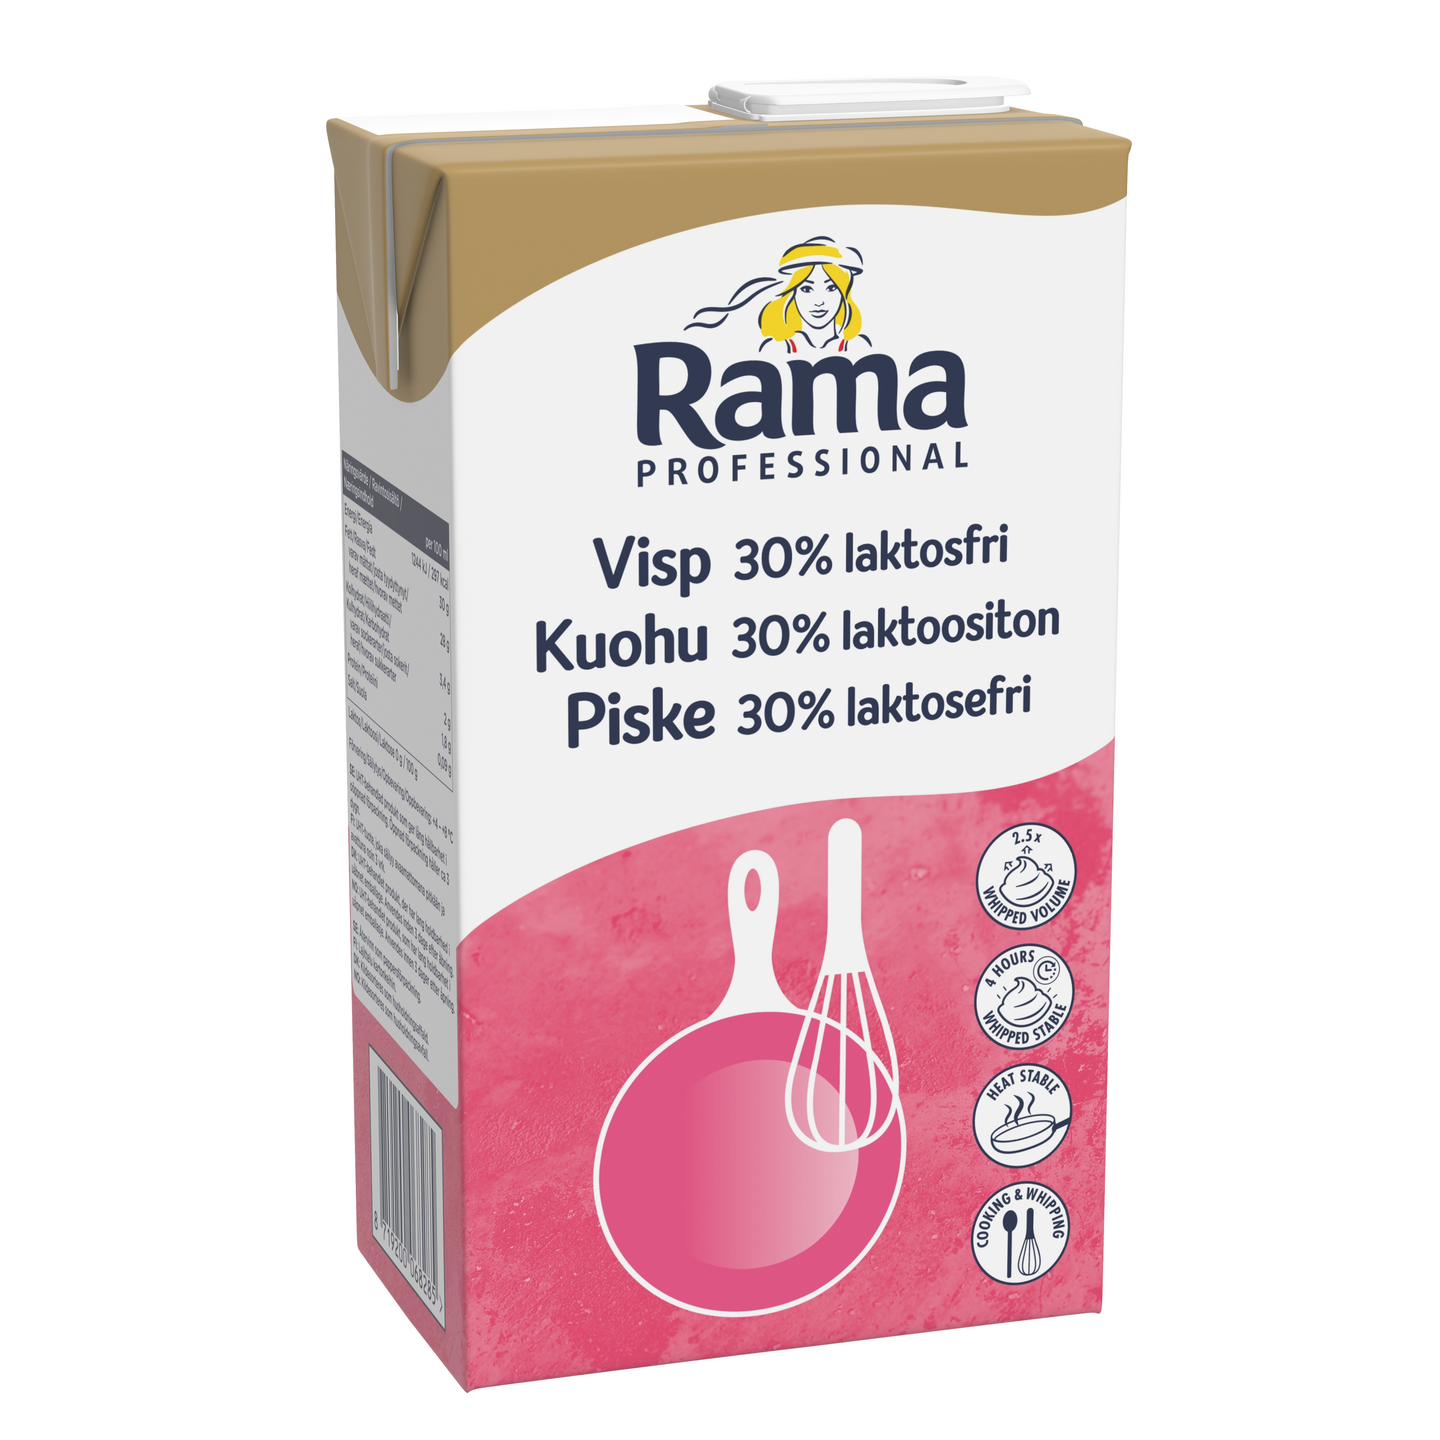 Rama Professional Kuohu Laktoositon vispautuva maitopohjainen kasvirasvasekoite 30% 1l